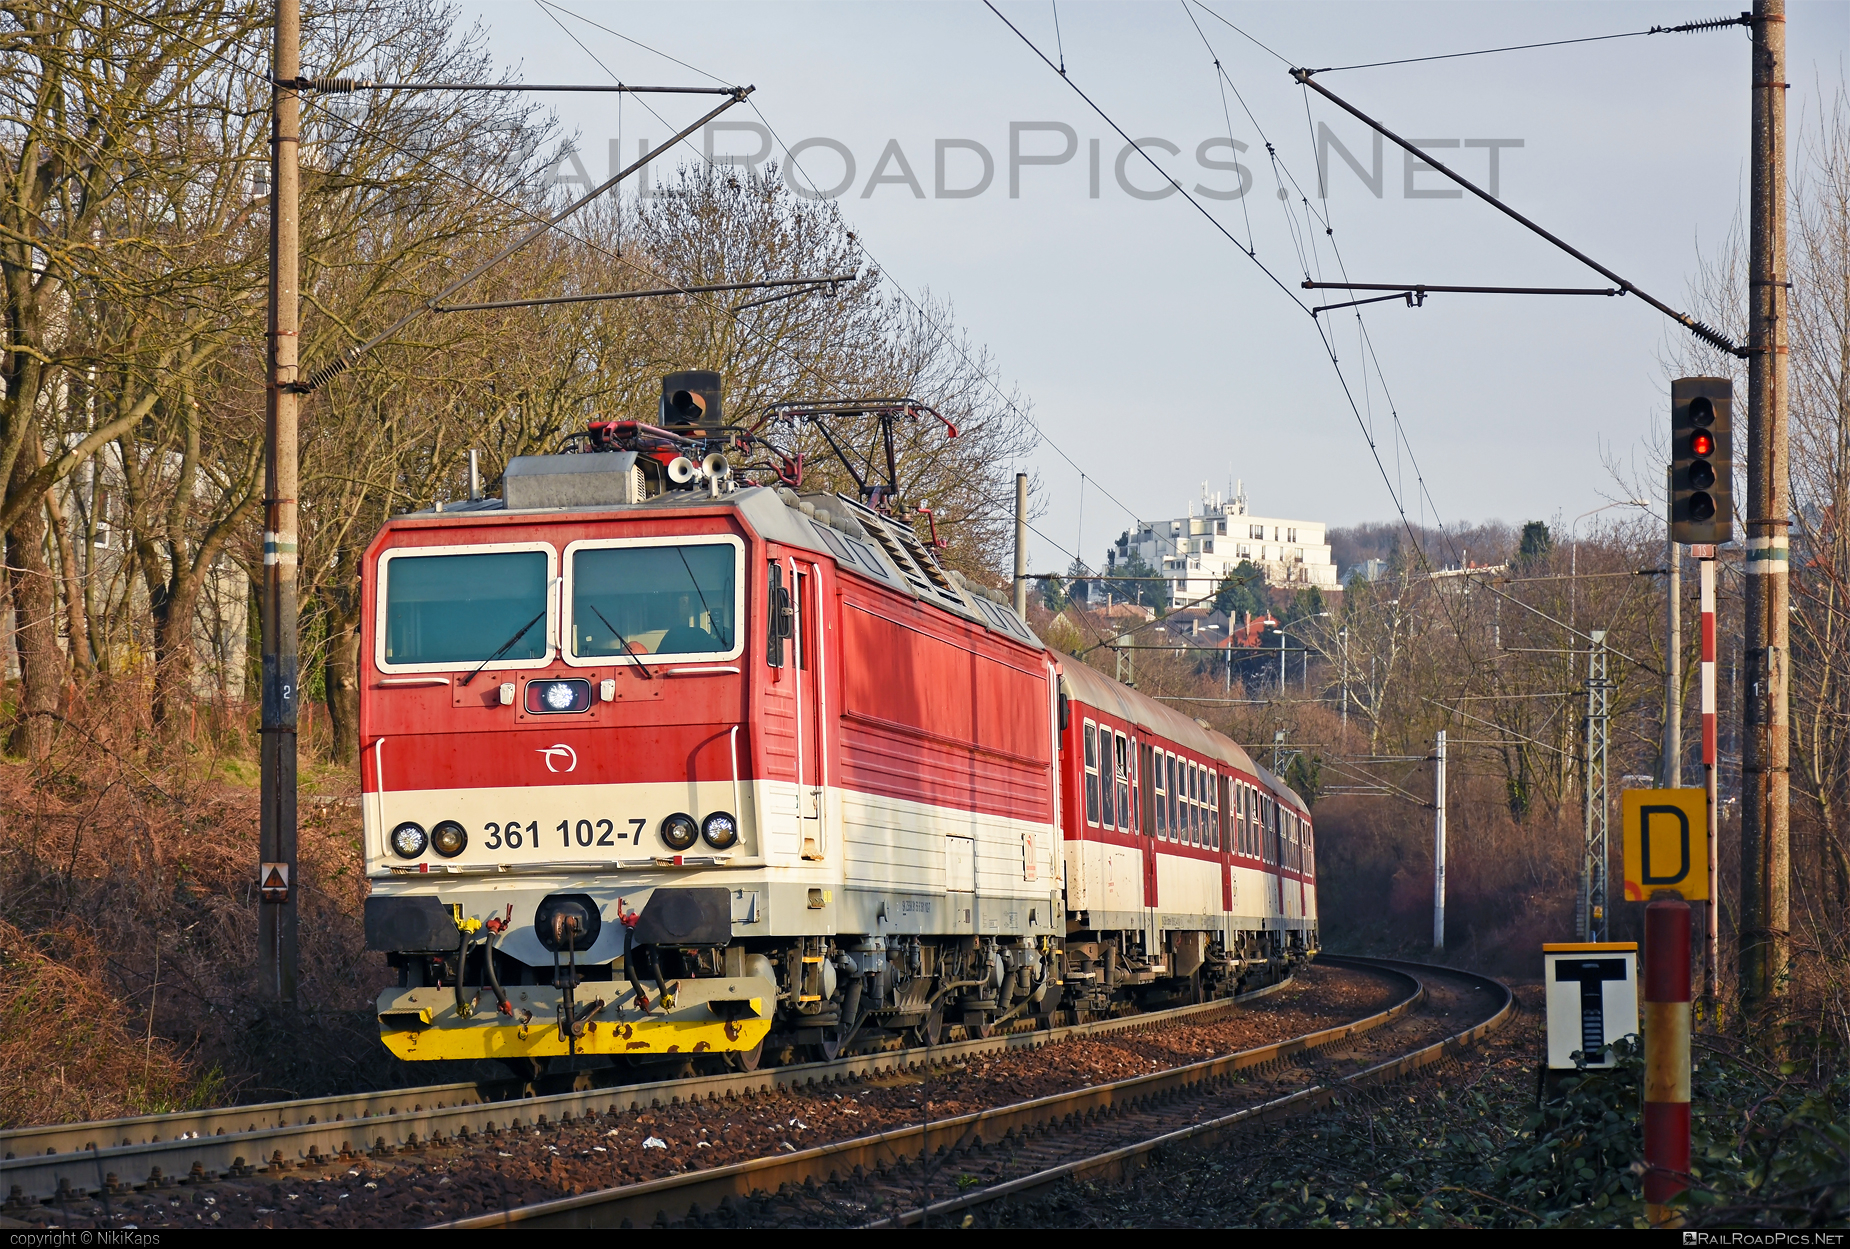 ŽOS Vrútky Class 361.1 - 361 102-7 operated by Železničná Spoločnost' Slovensko, a.s. #ZeleznicnaSpolocnostSlovensko #locomotive361 #locomotive3611 #zosvrutky #zssk